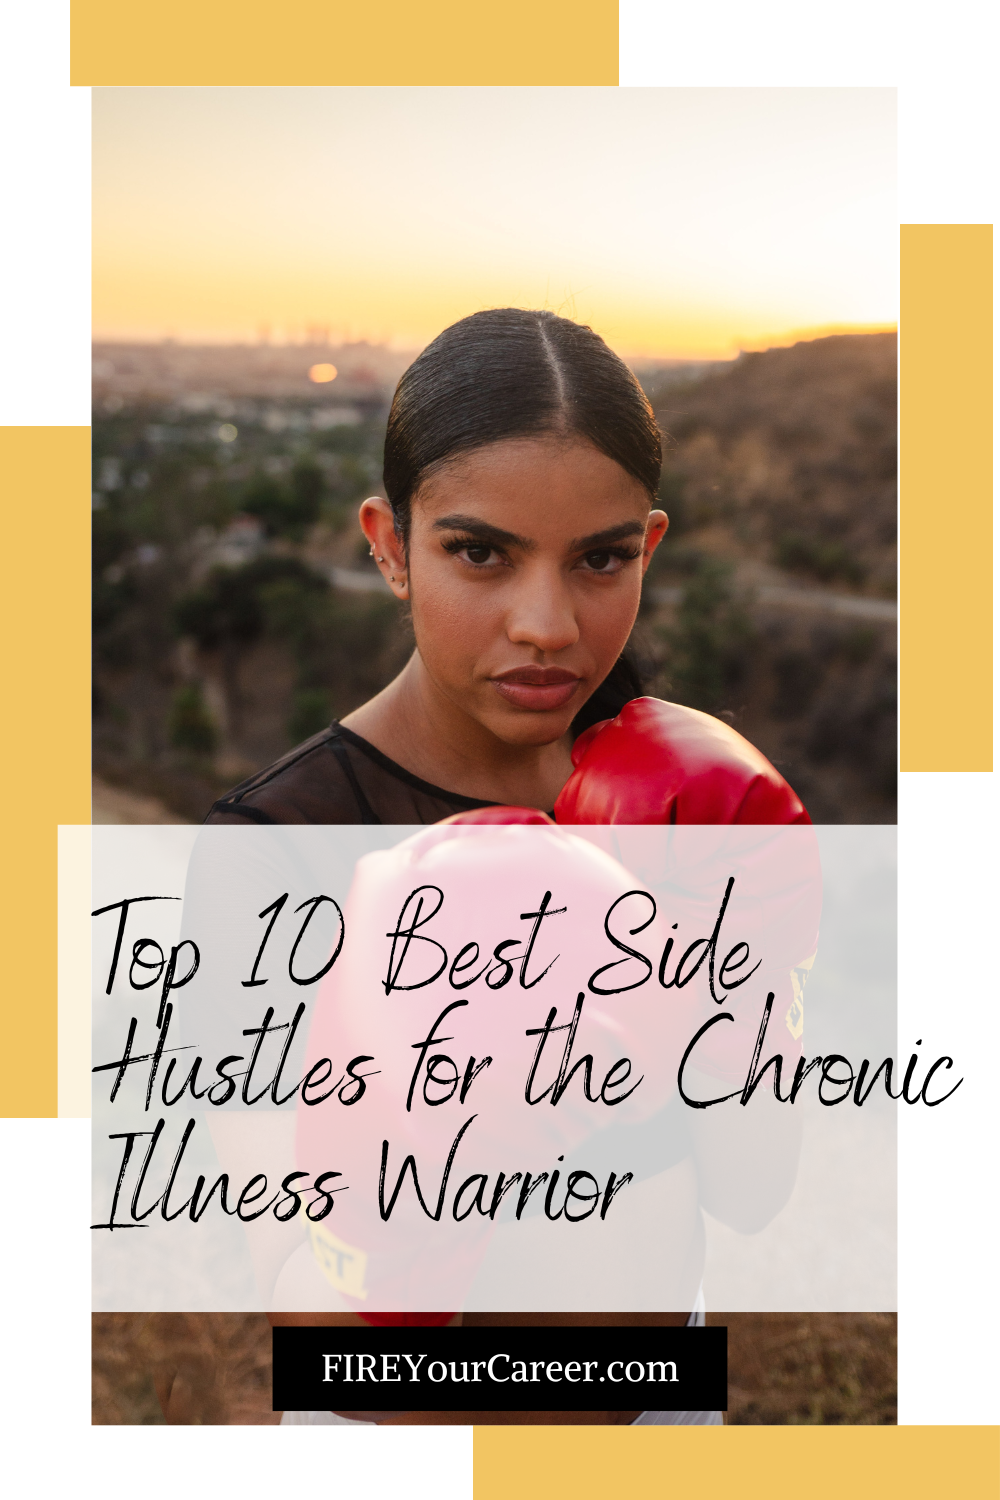 Top 10 Best Side Hustles for the Chronic Illness Warrior Pinterest